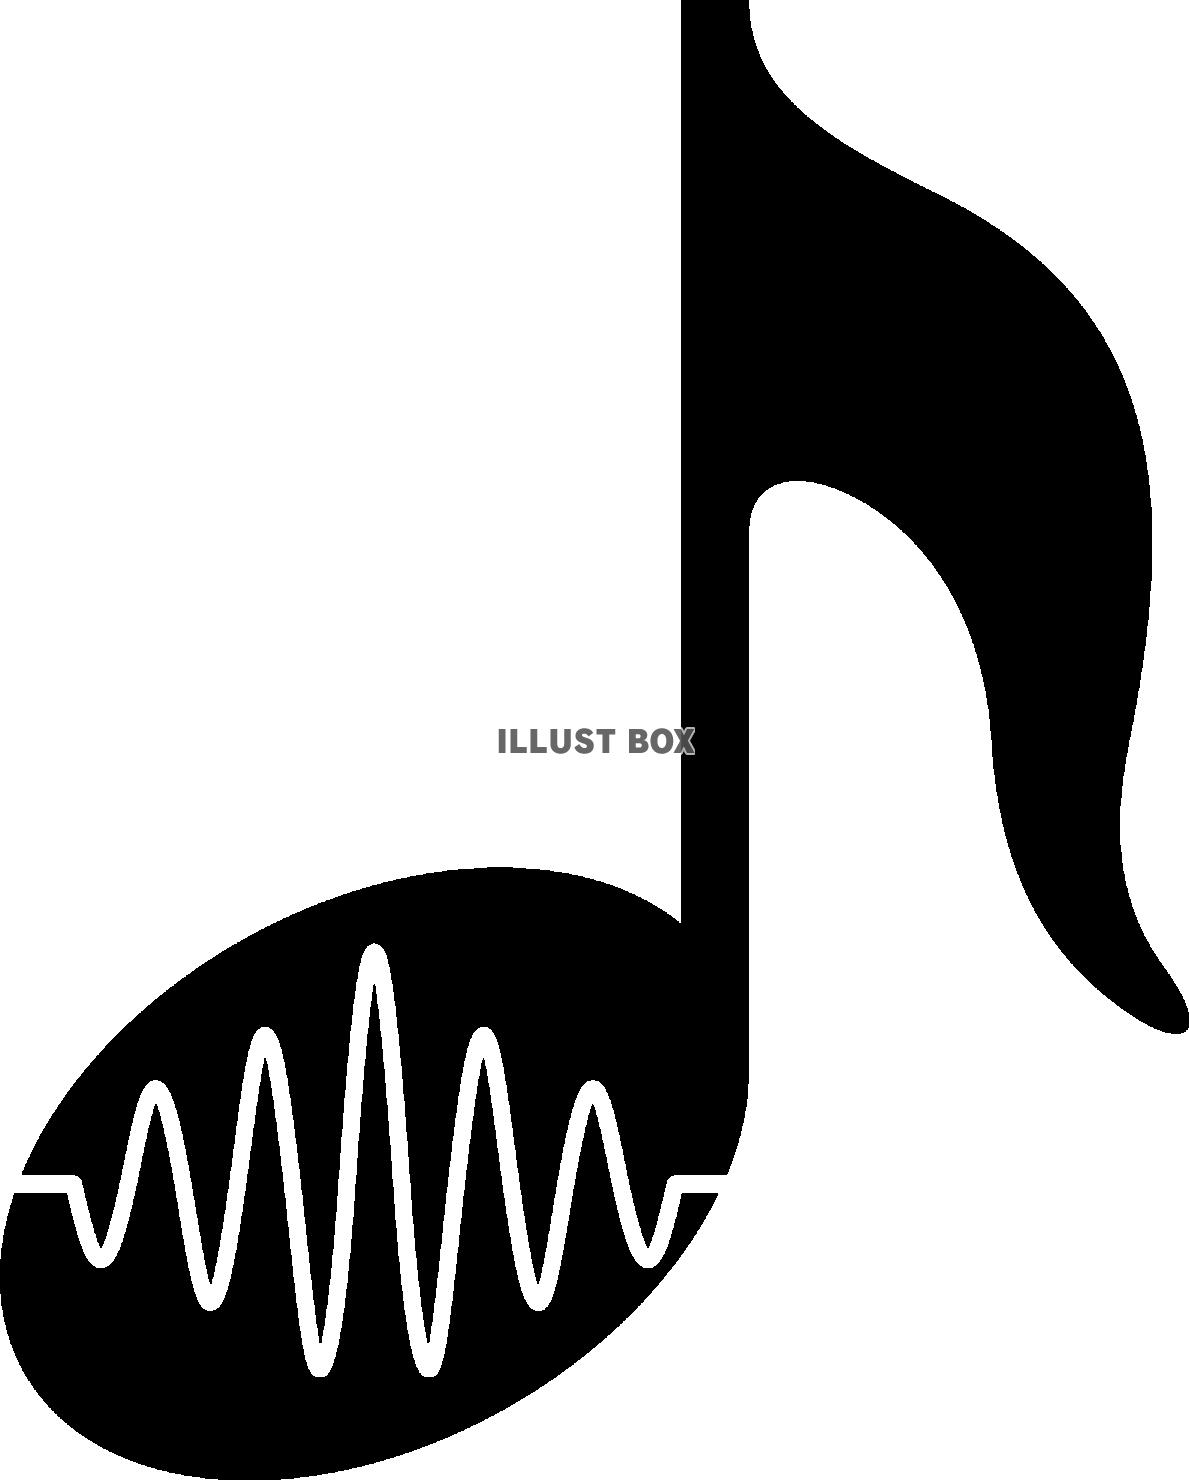 音楽のイメージの音符と音波のピクトグラム